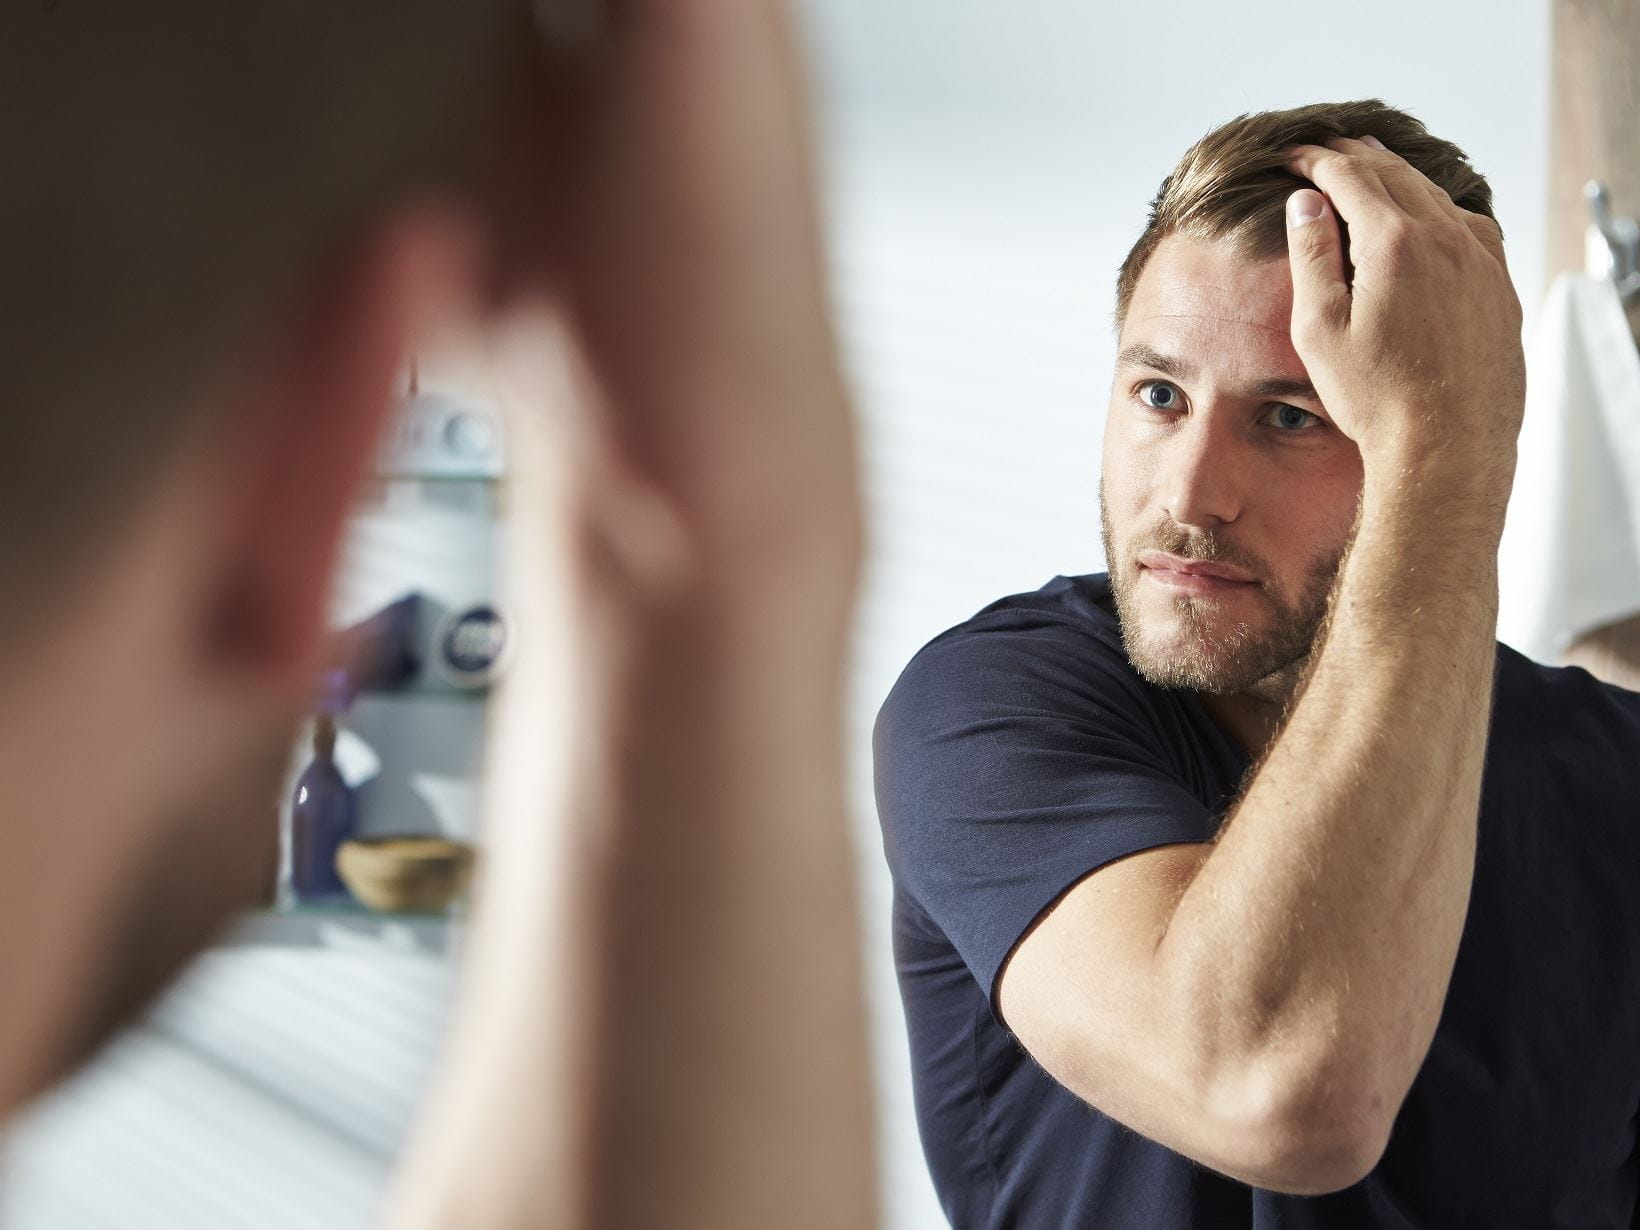 Ispadanje kose kod muškaraca čest je problem. Imamo odgovor.